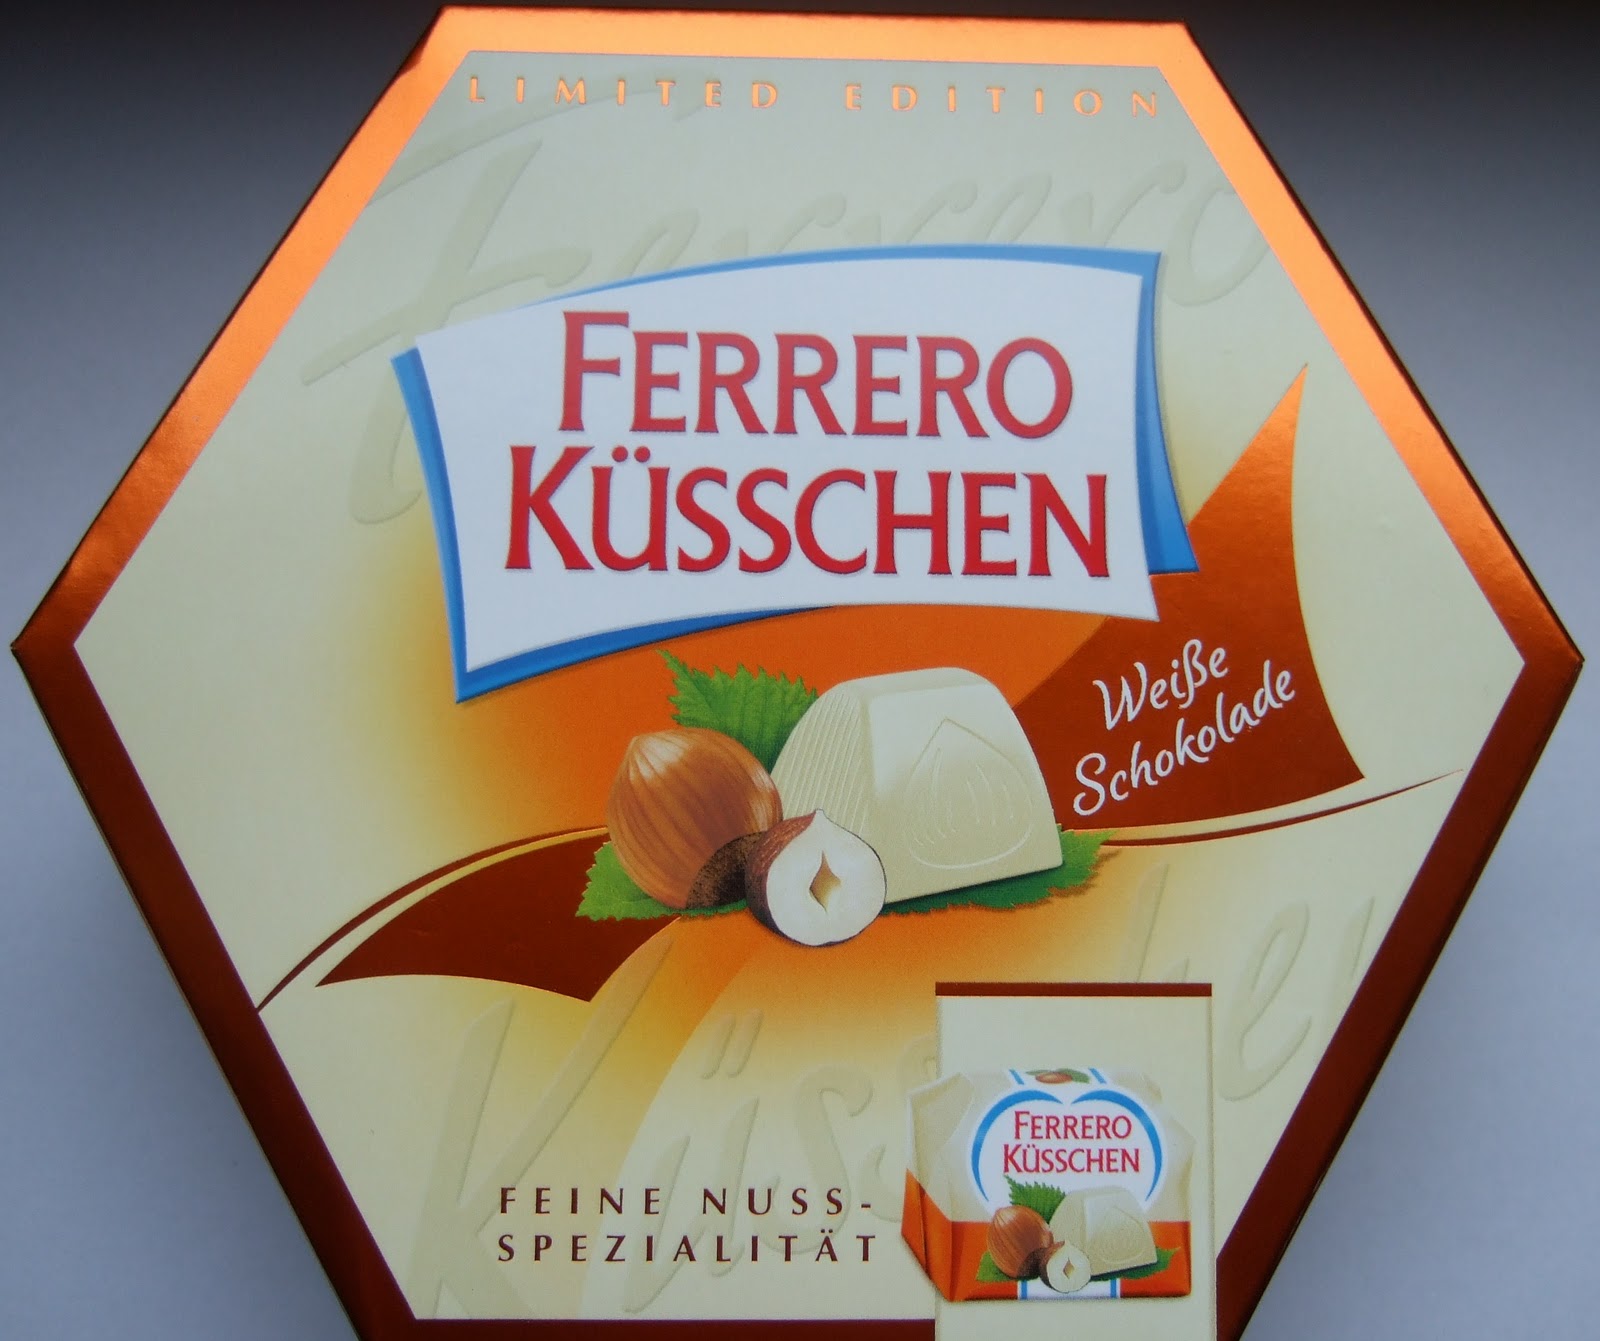 allaboutevchen: Neu - Ferrero Küsschen Weiße Schokolade